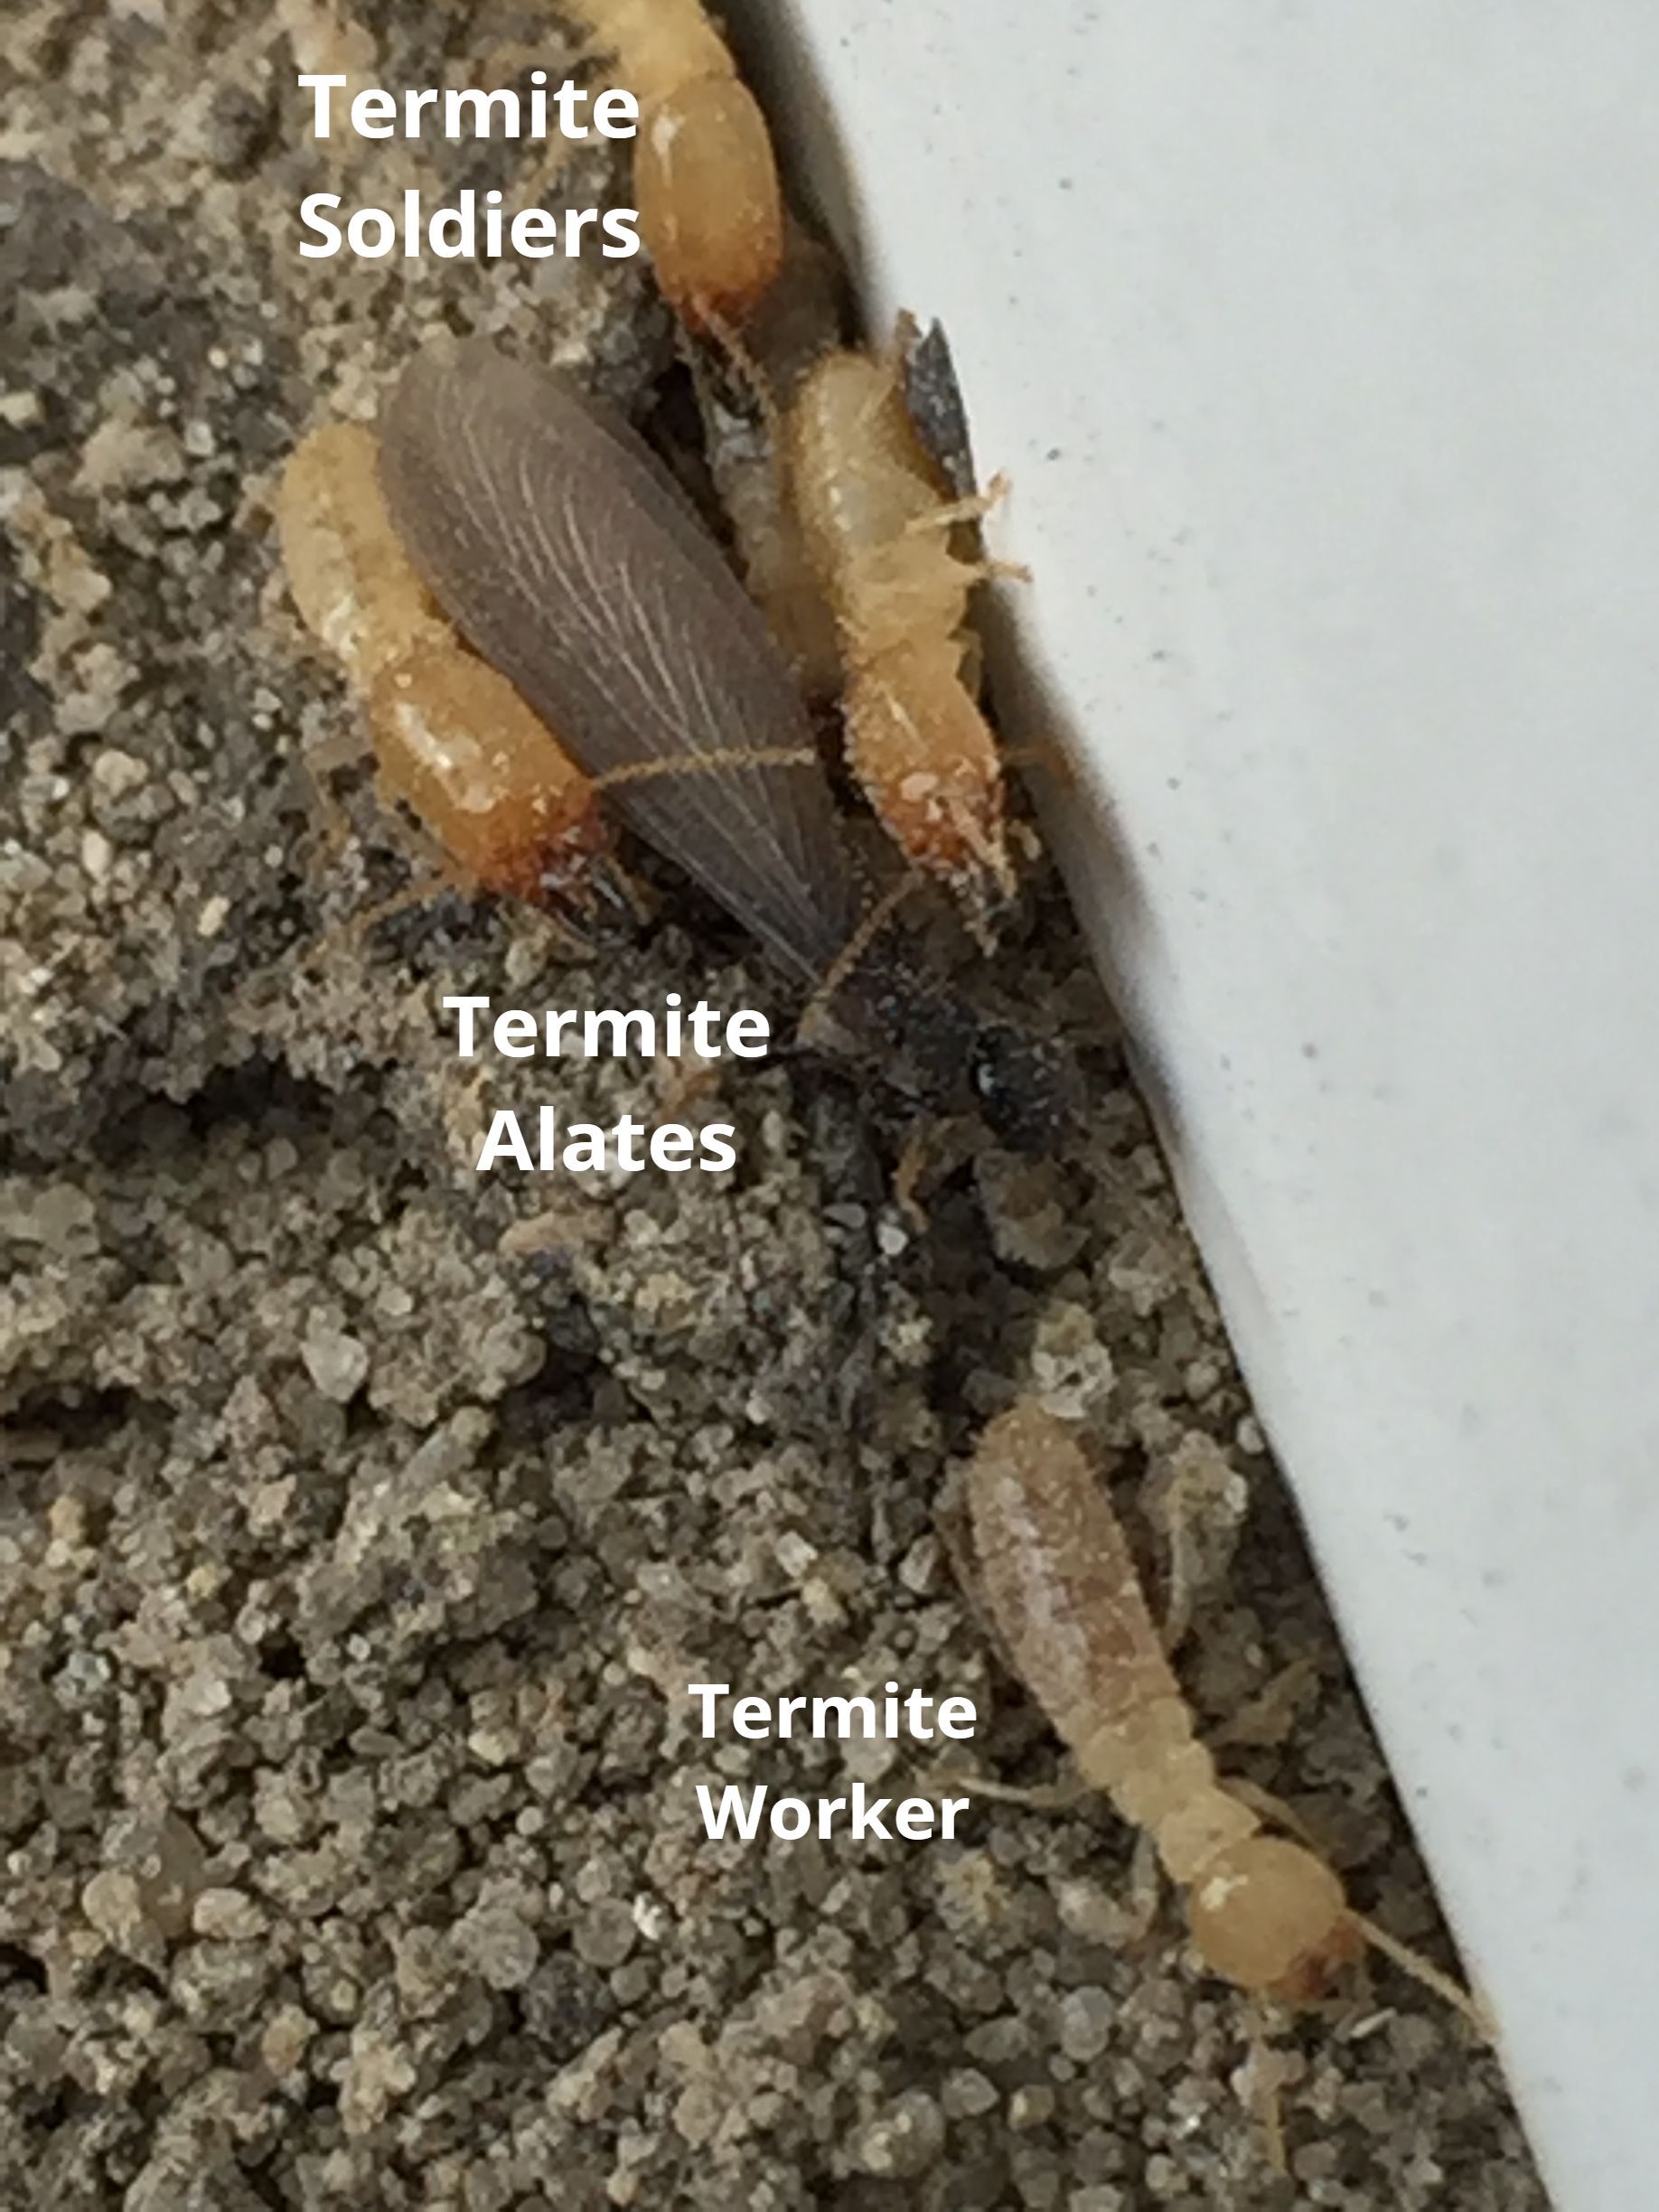 Termite Alates, Termite Soldier, Termite Worker in Delaware